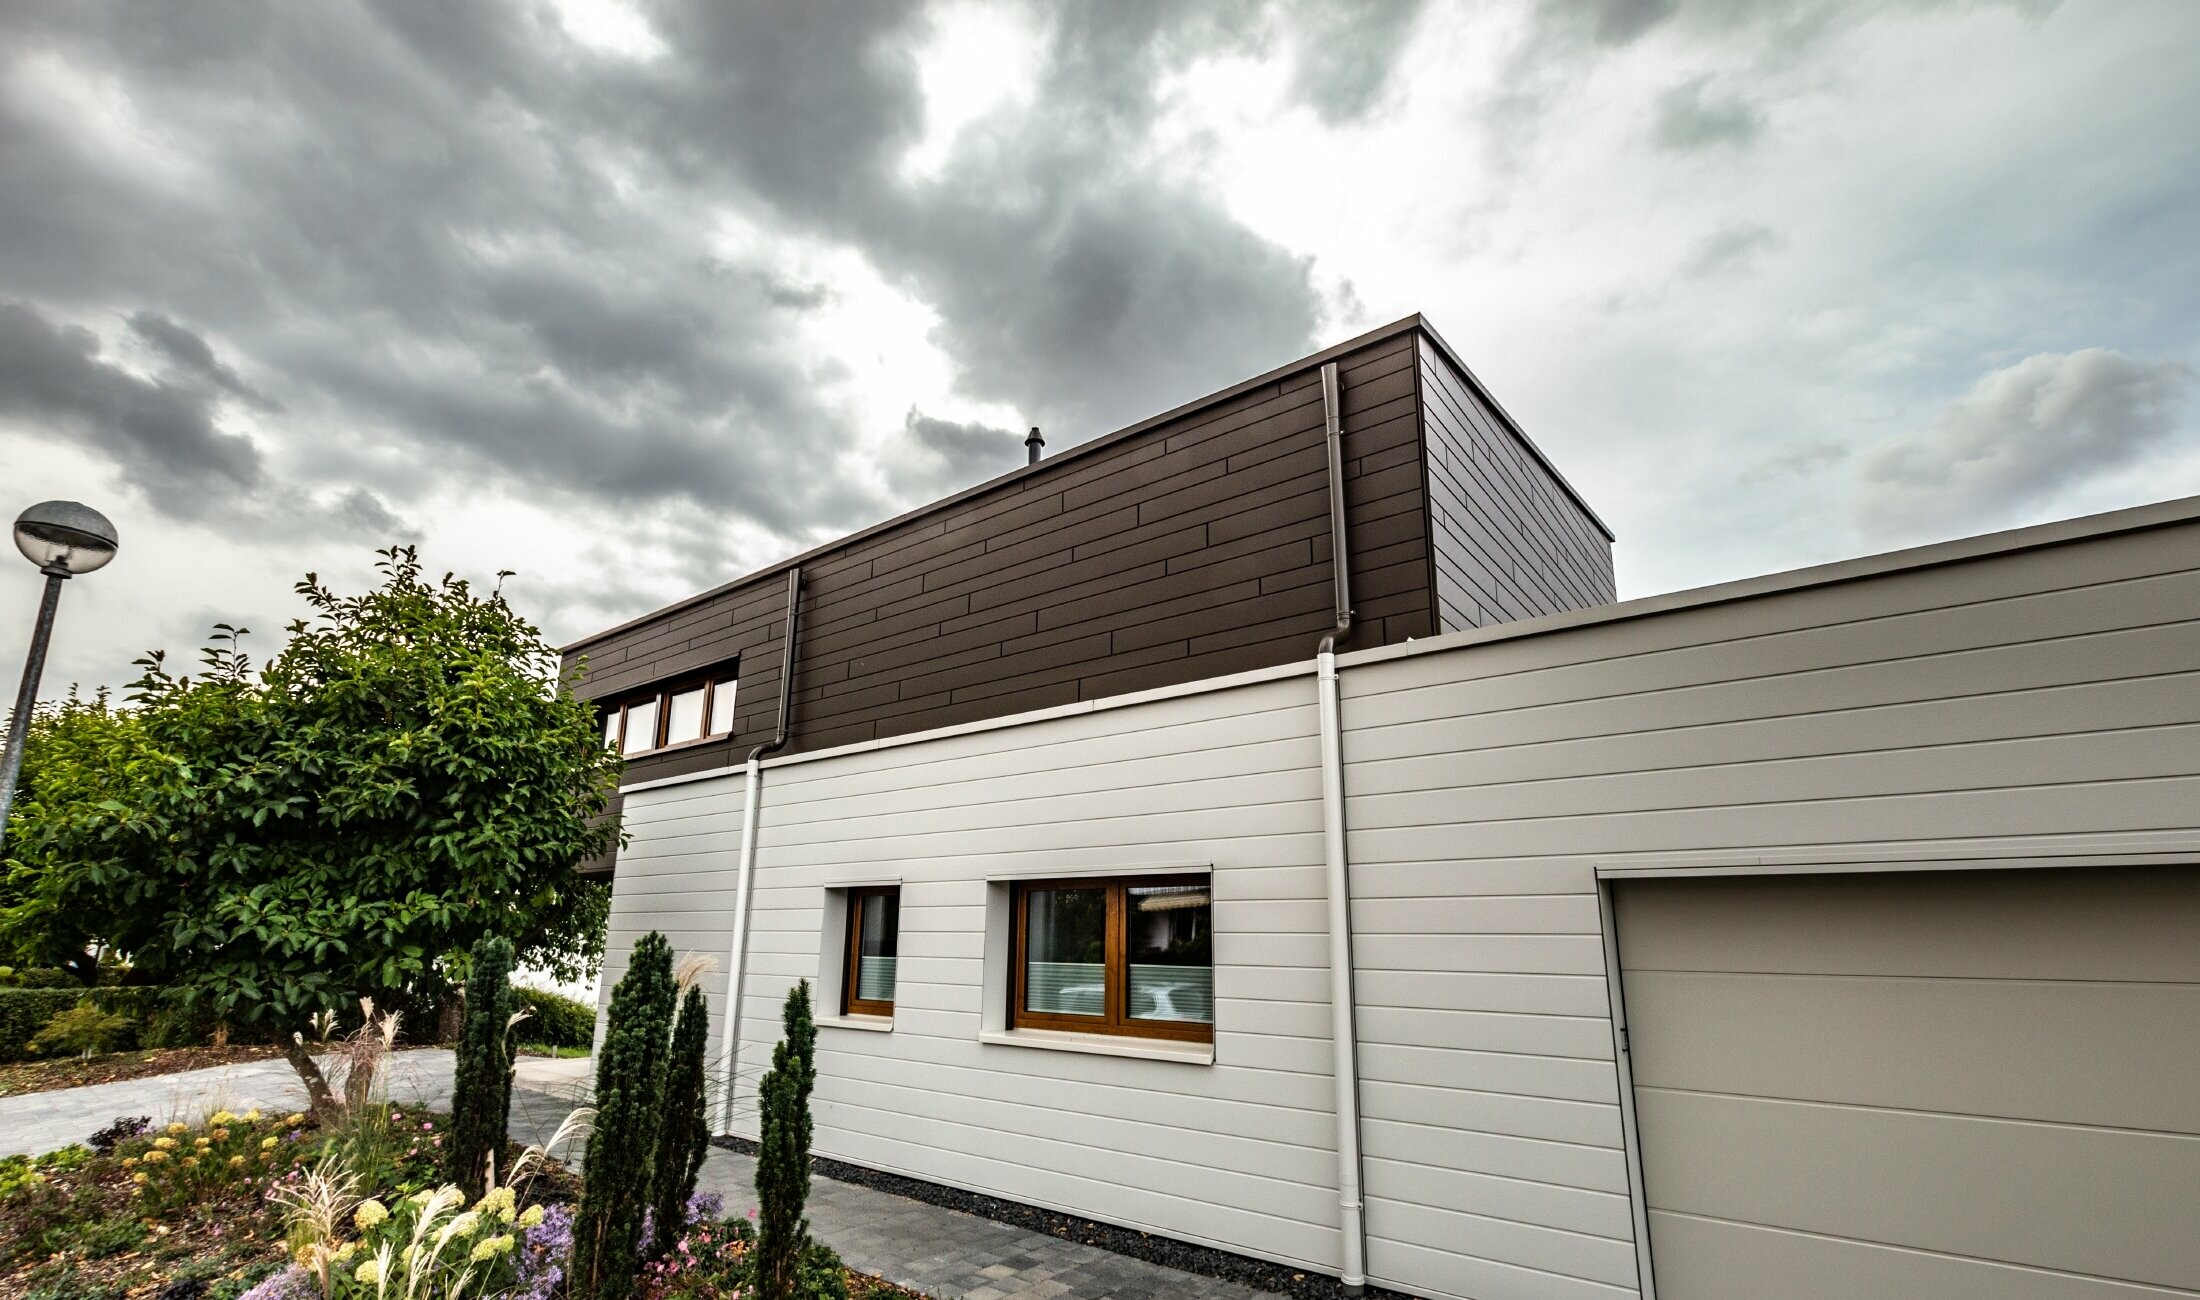 Fasadna obloga garaže s PREFA kazetama Siding horizontalnim u bijeloj boji, s bočnim uljevom.